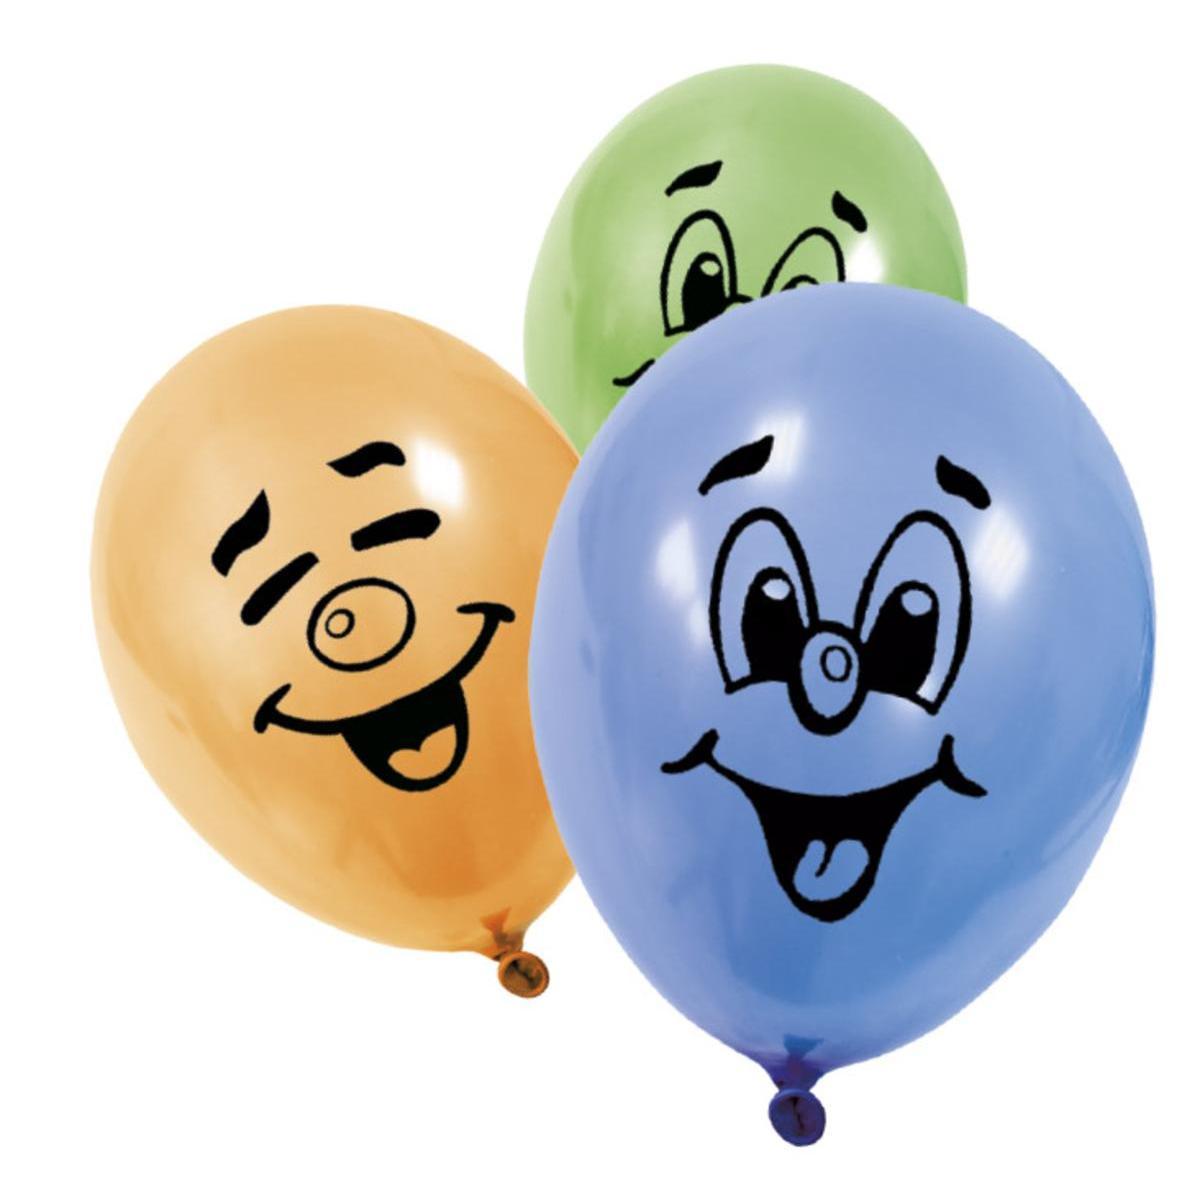 Ballon imprimé sourire - Différents coloris (x 8) - ø 25 x 31 cm - Multicolore